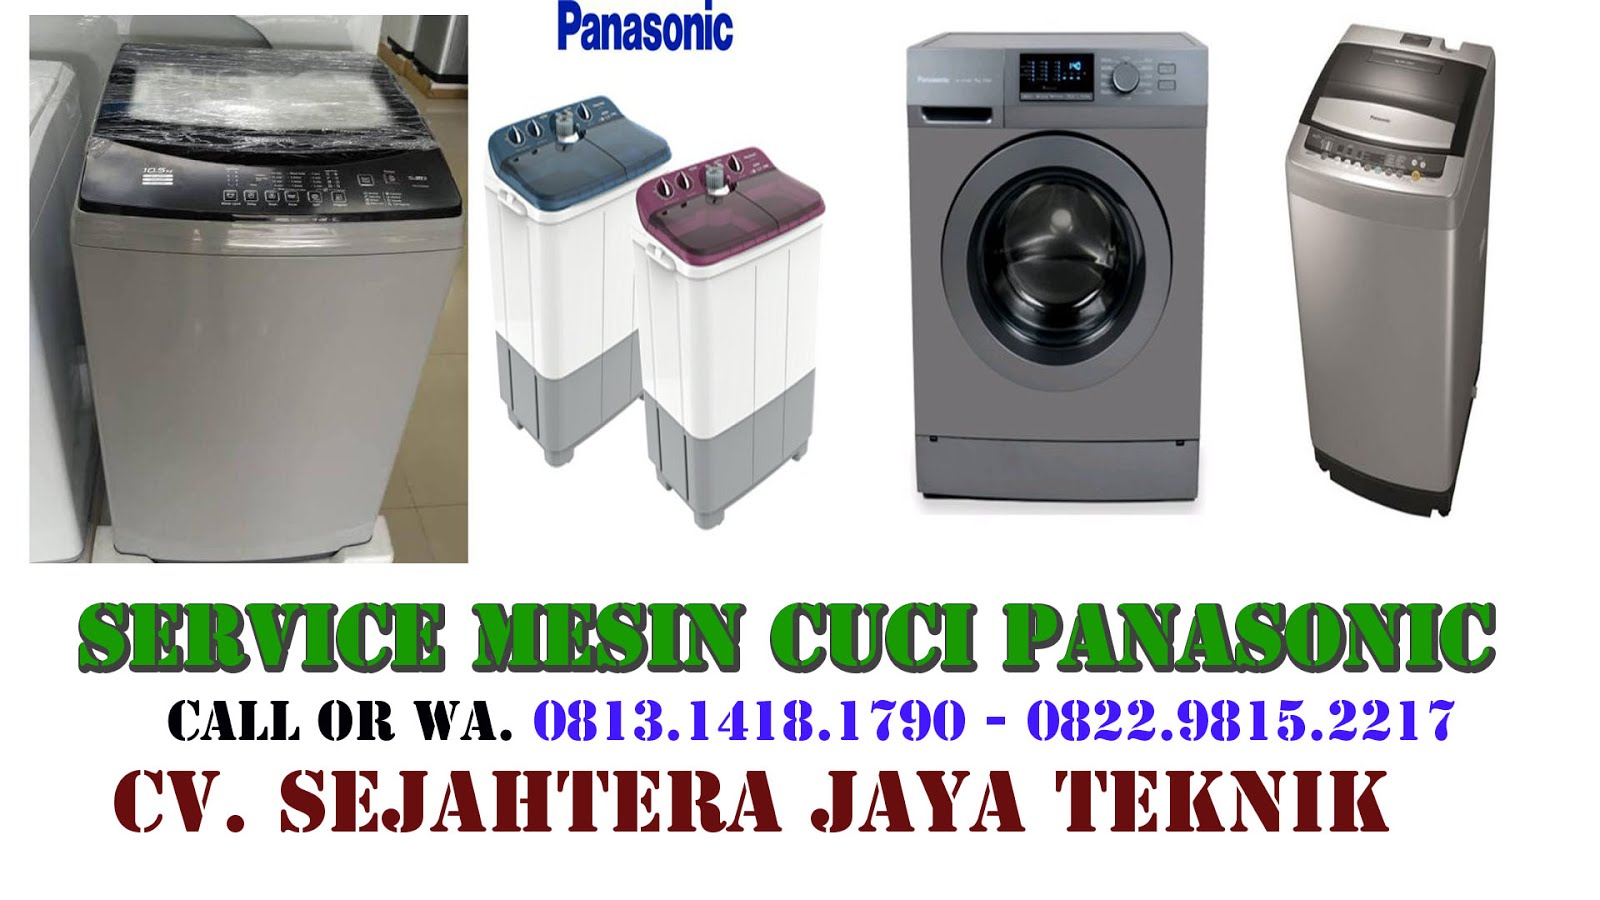 Service Mesin Cuci Panasonic di Jakarta Selatan